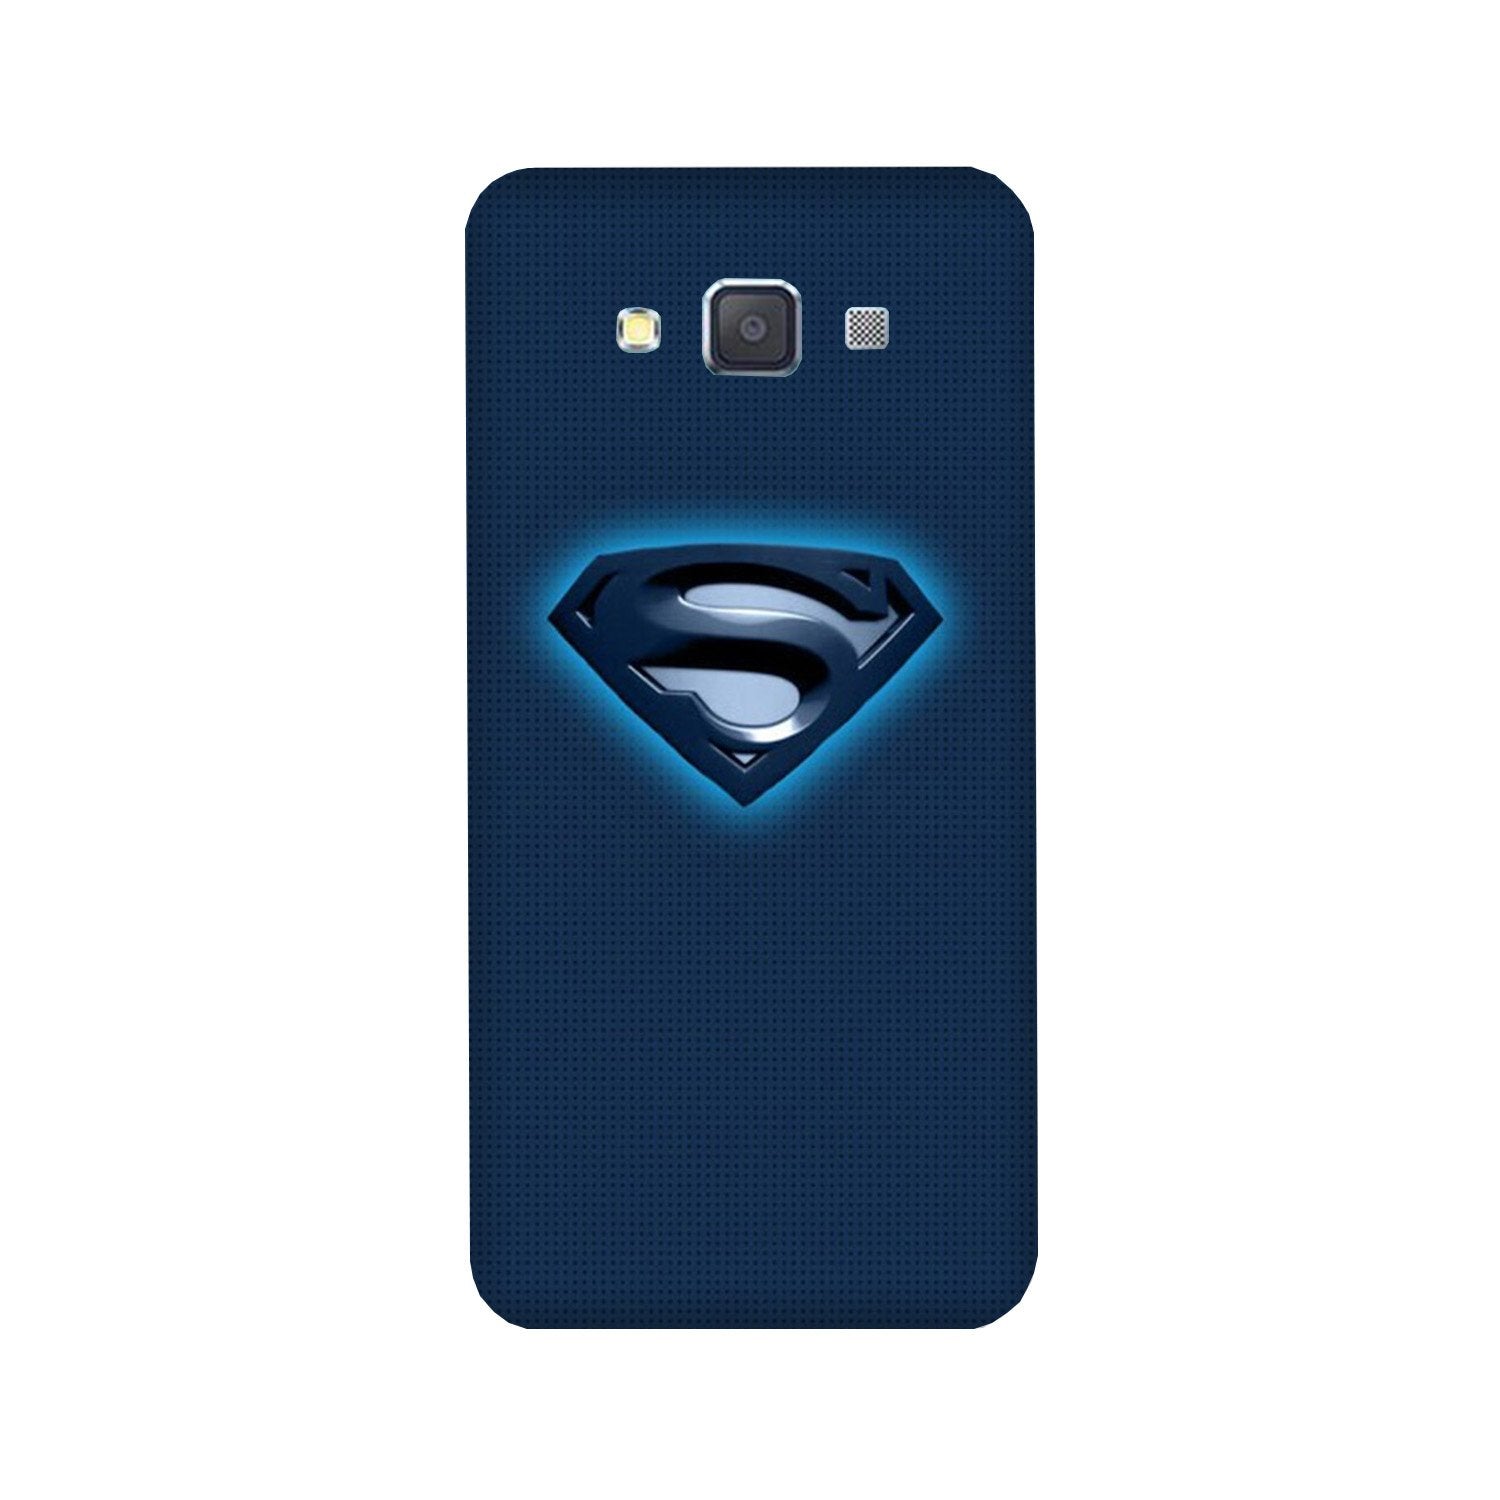 Superman Superhero Case for Galaxy E7  (Design - 117)